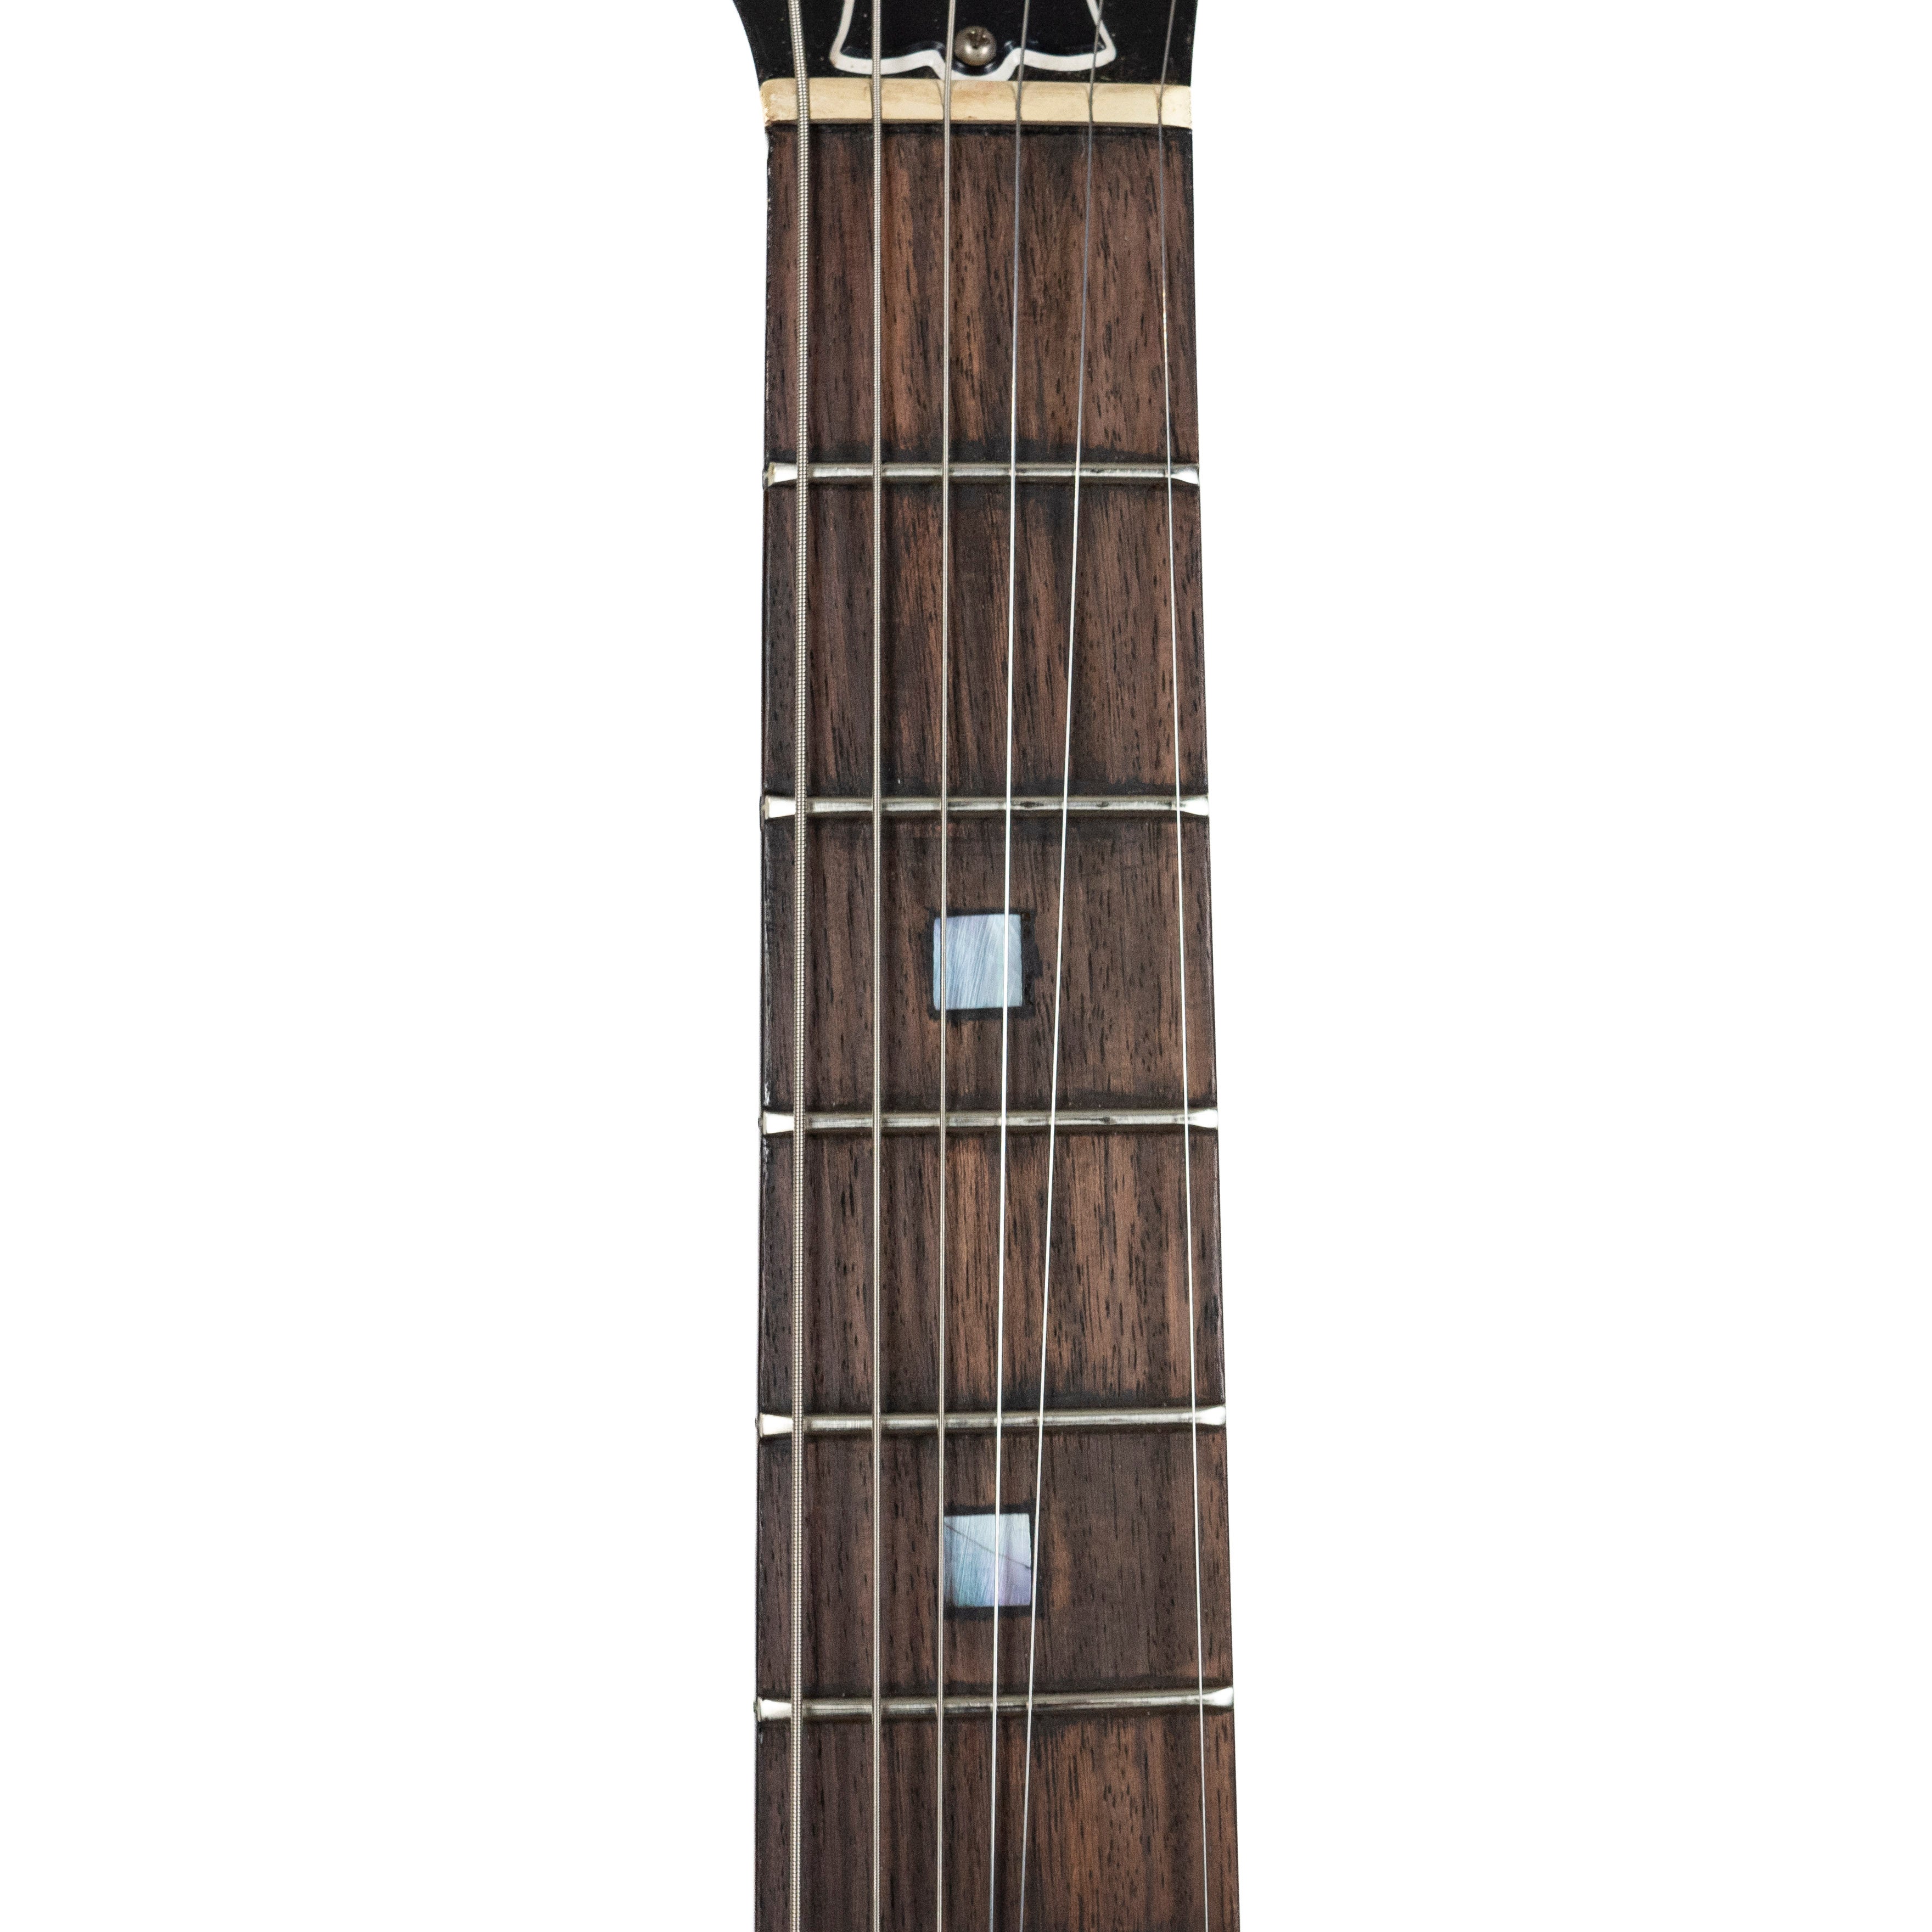 Gibson 1990 Explorer '76 Sunburst